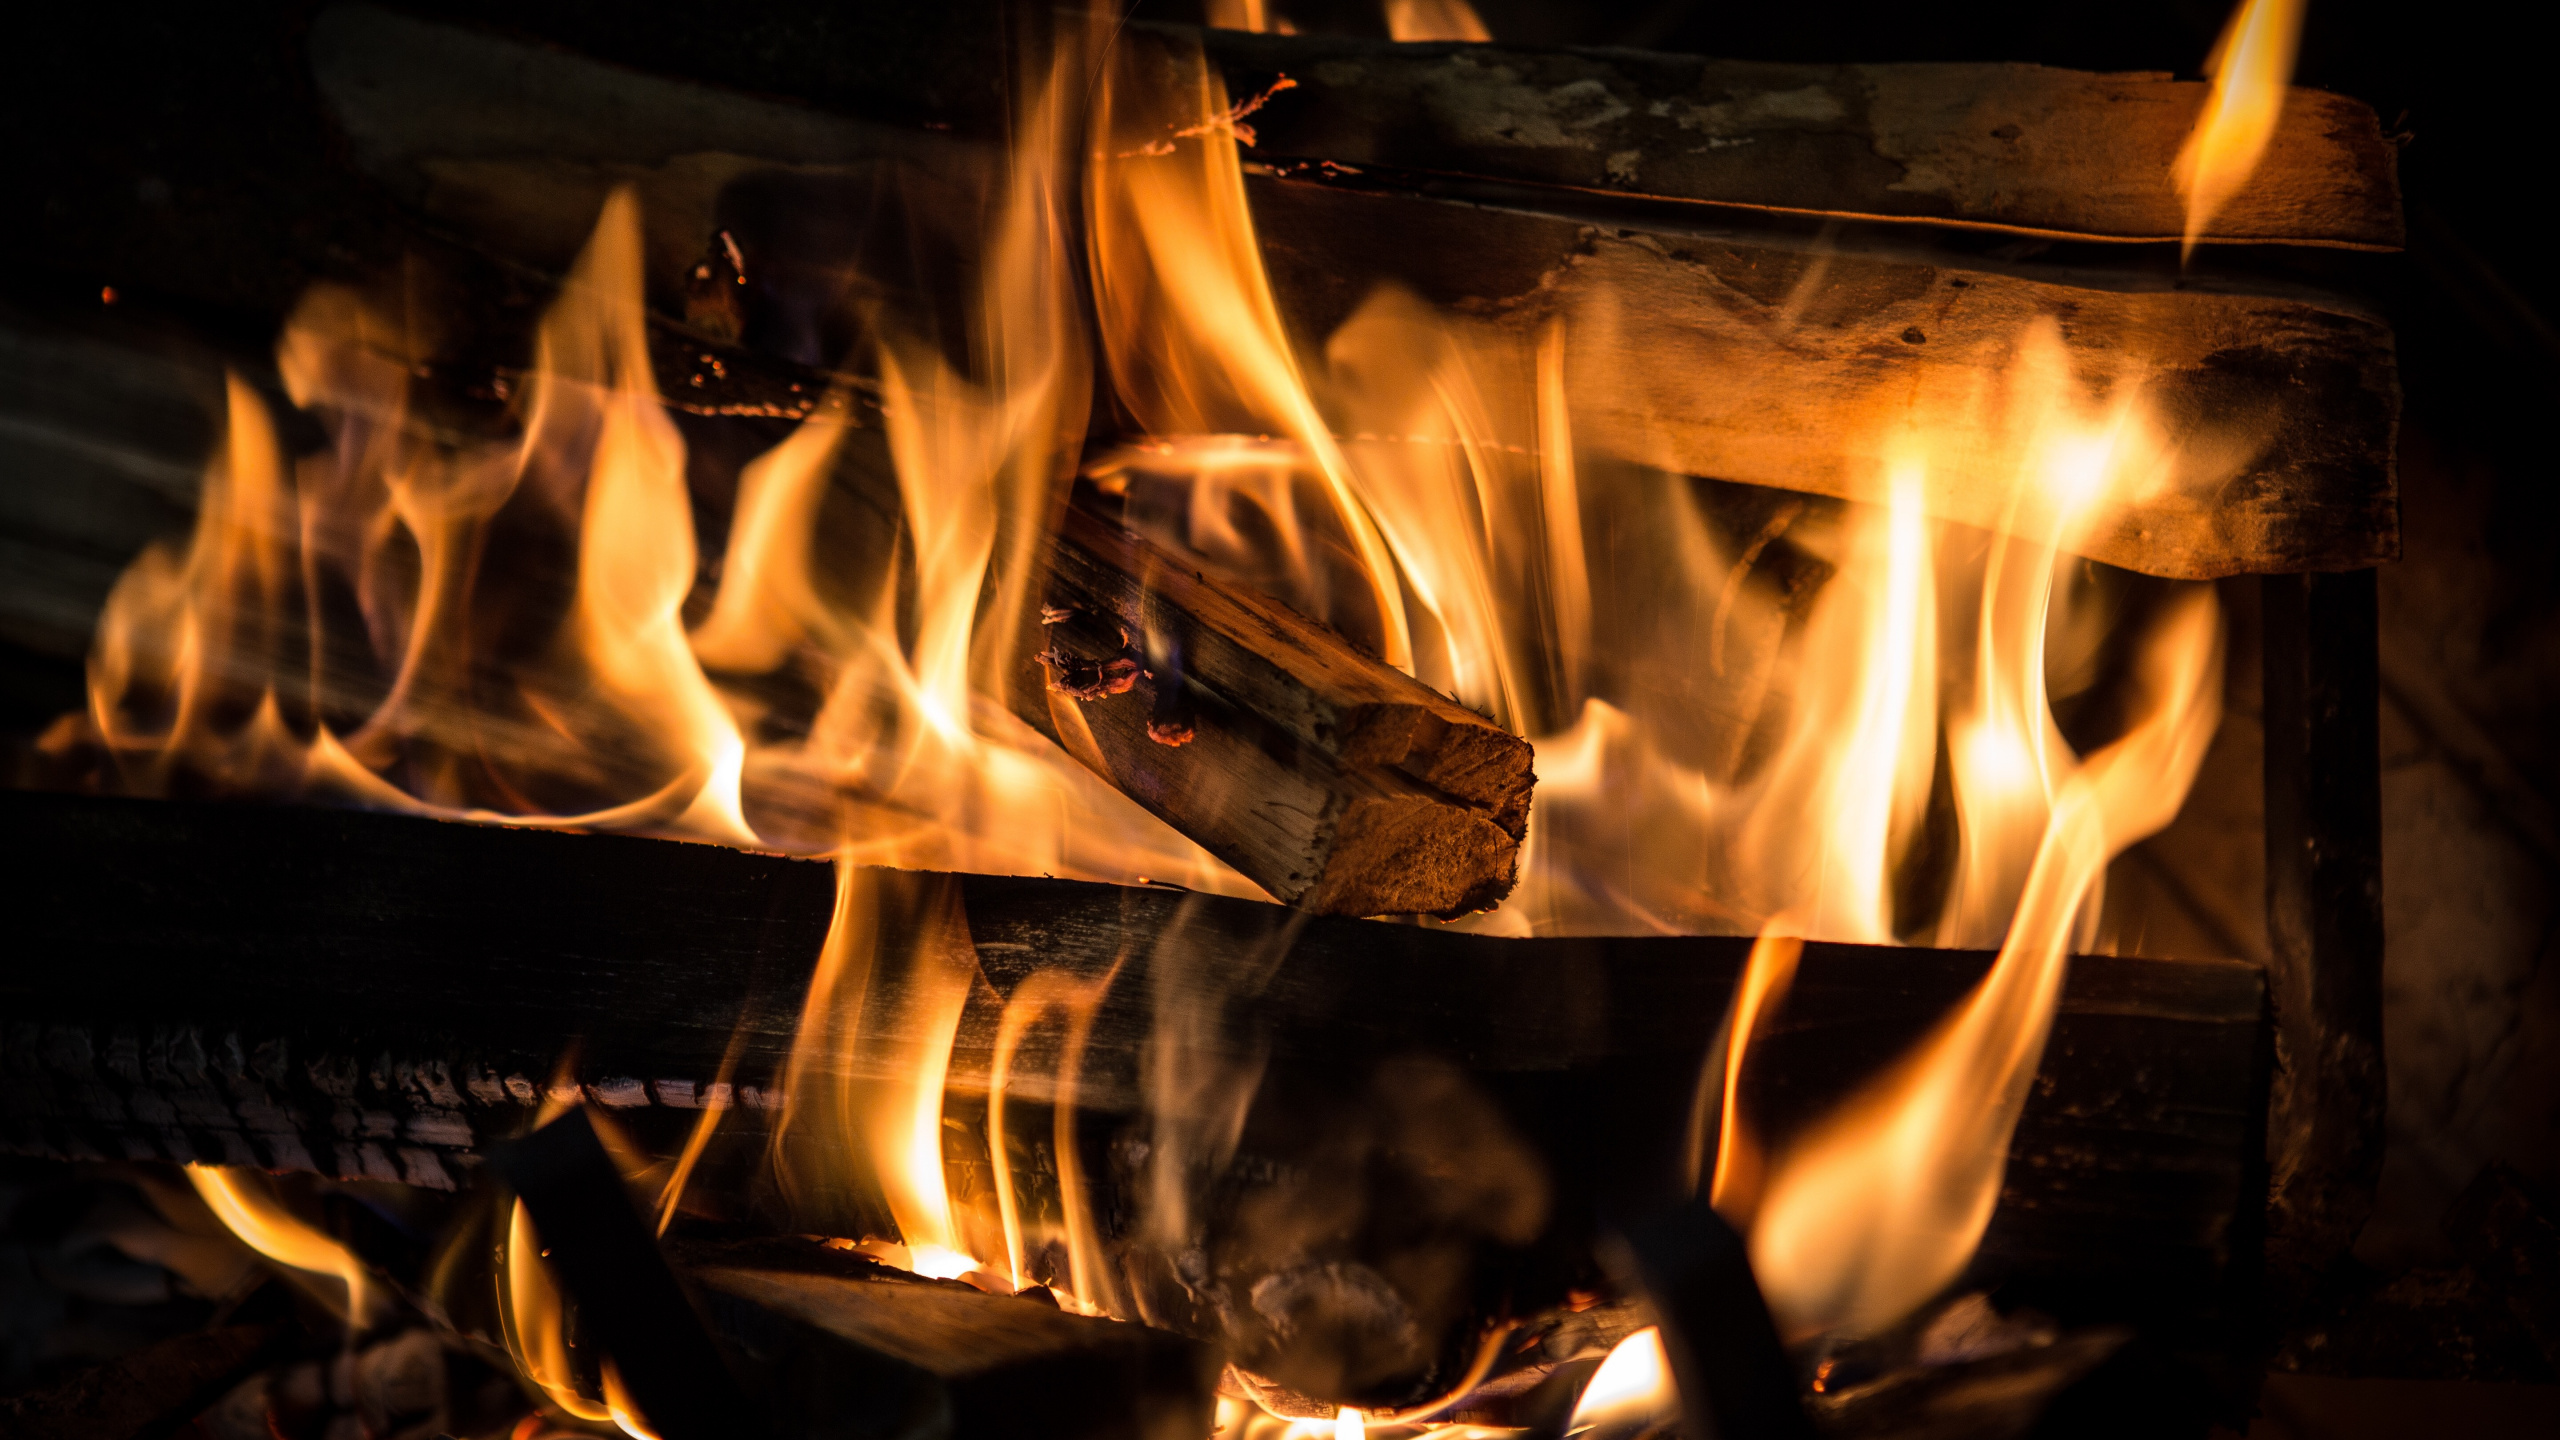 火焰, 炉子, 热, 篝火, 壁炉 壁纸 2560x1440 允许